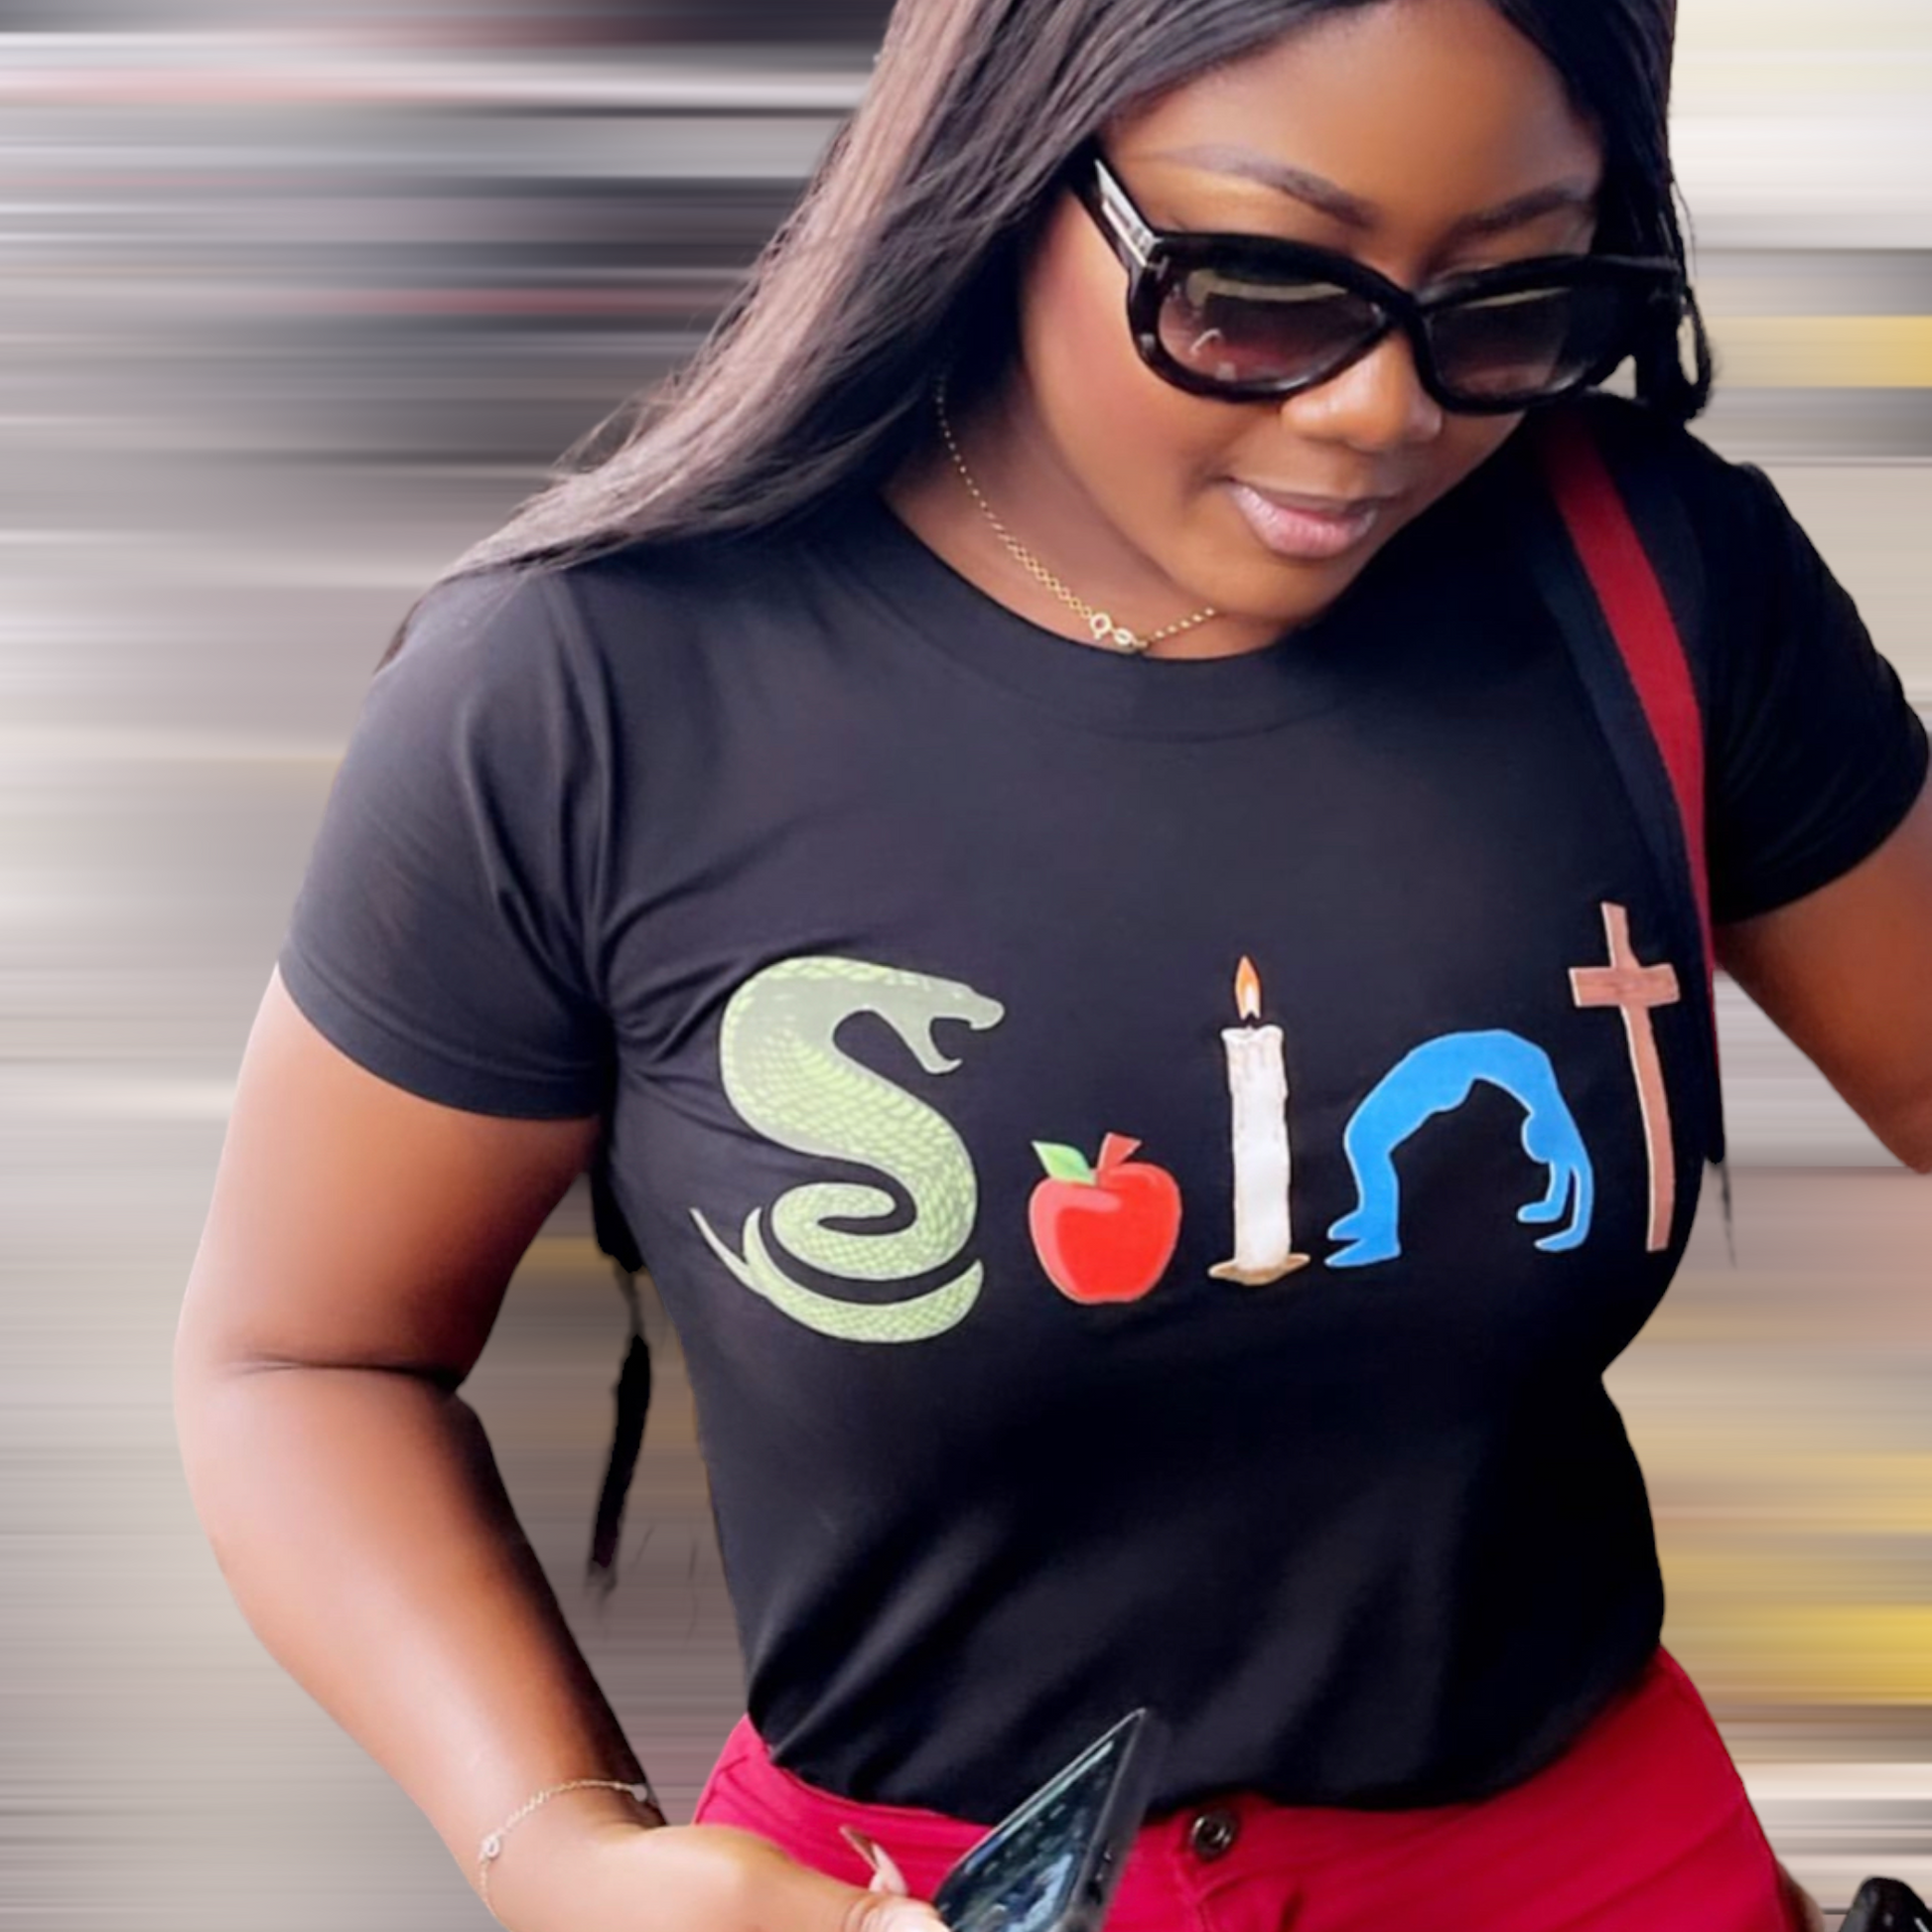 SAINT T-Shirt Special Release (Men, Women) - TheSinners2Saints